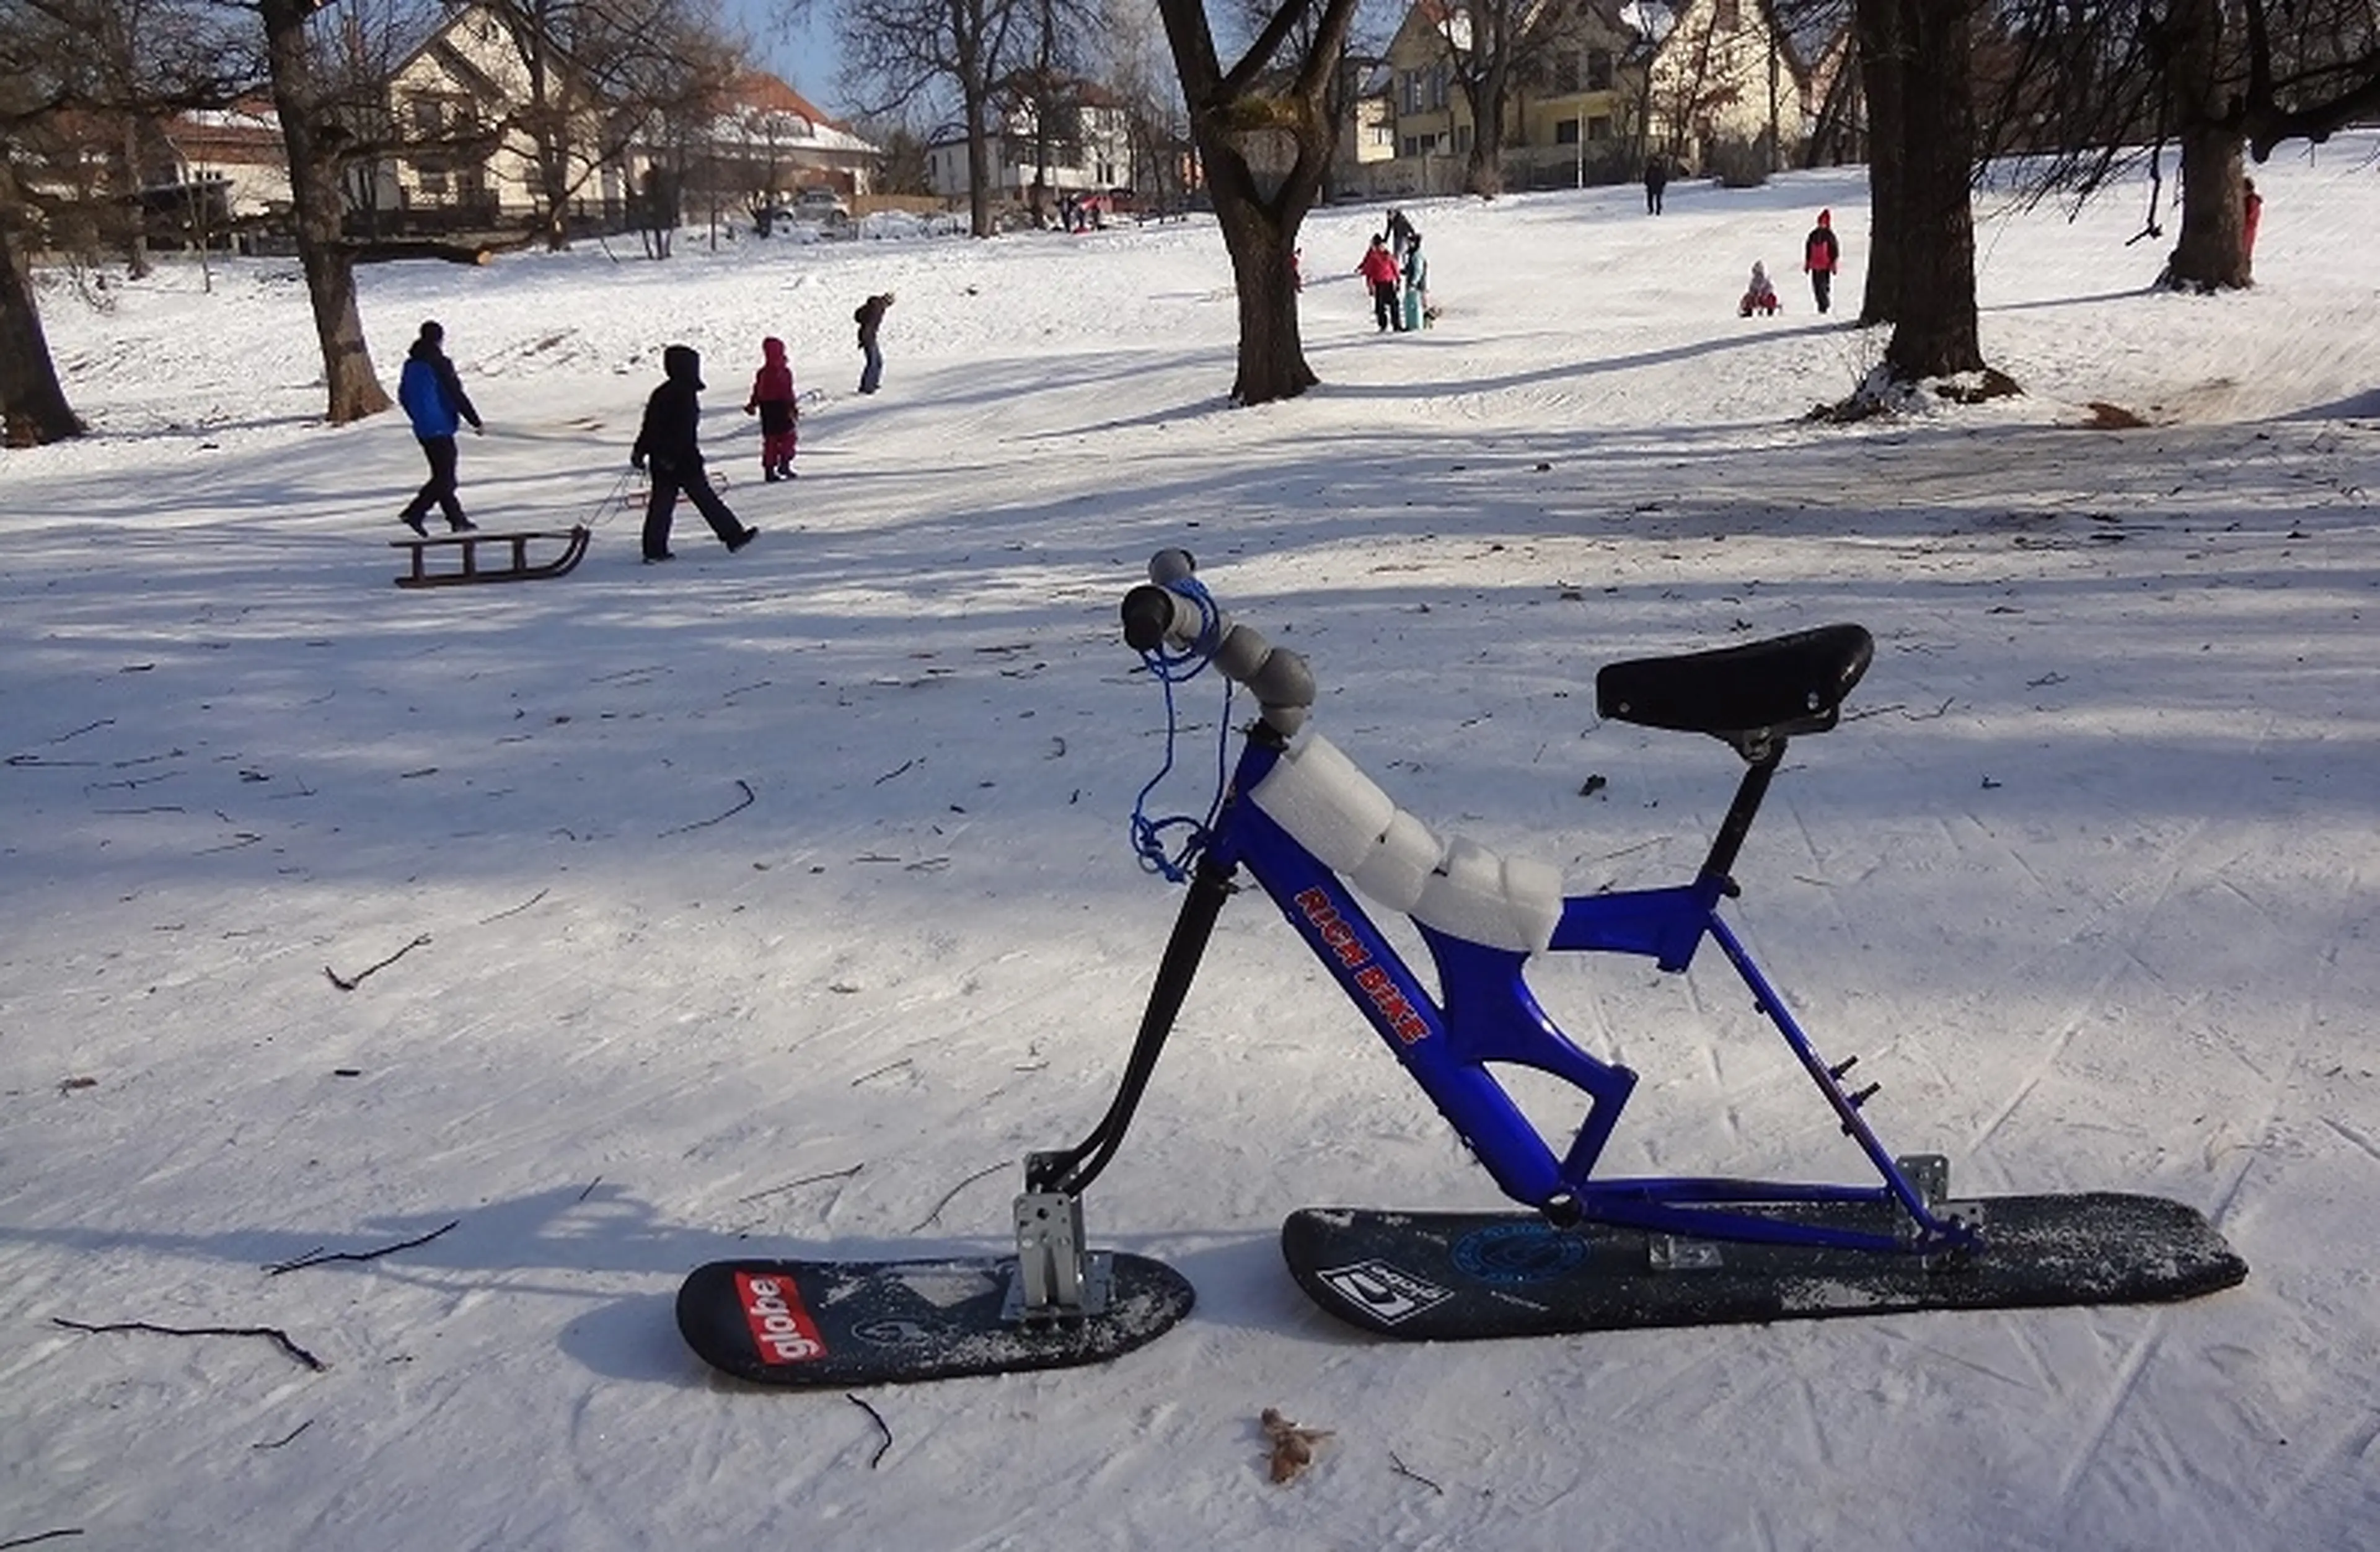 3. Snow bike